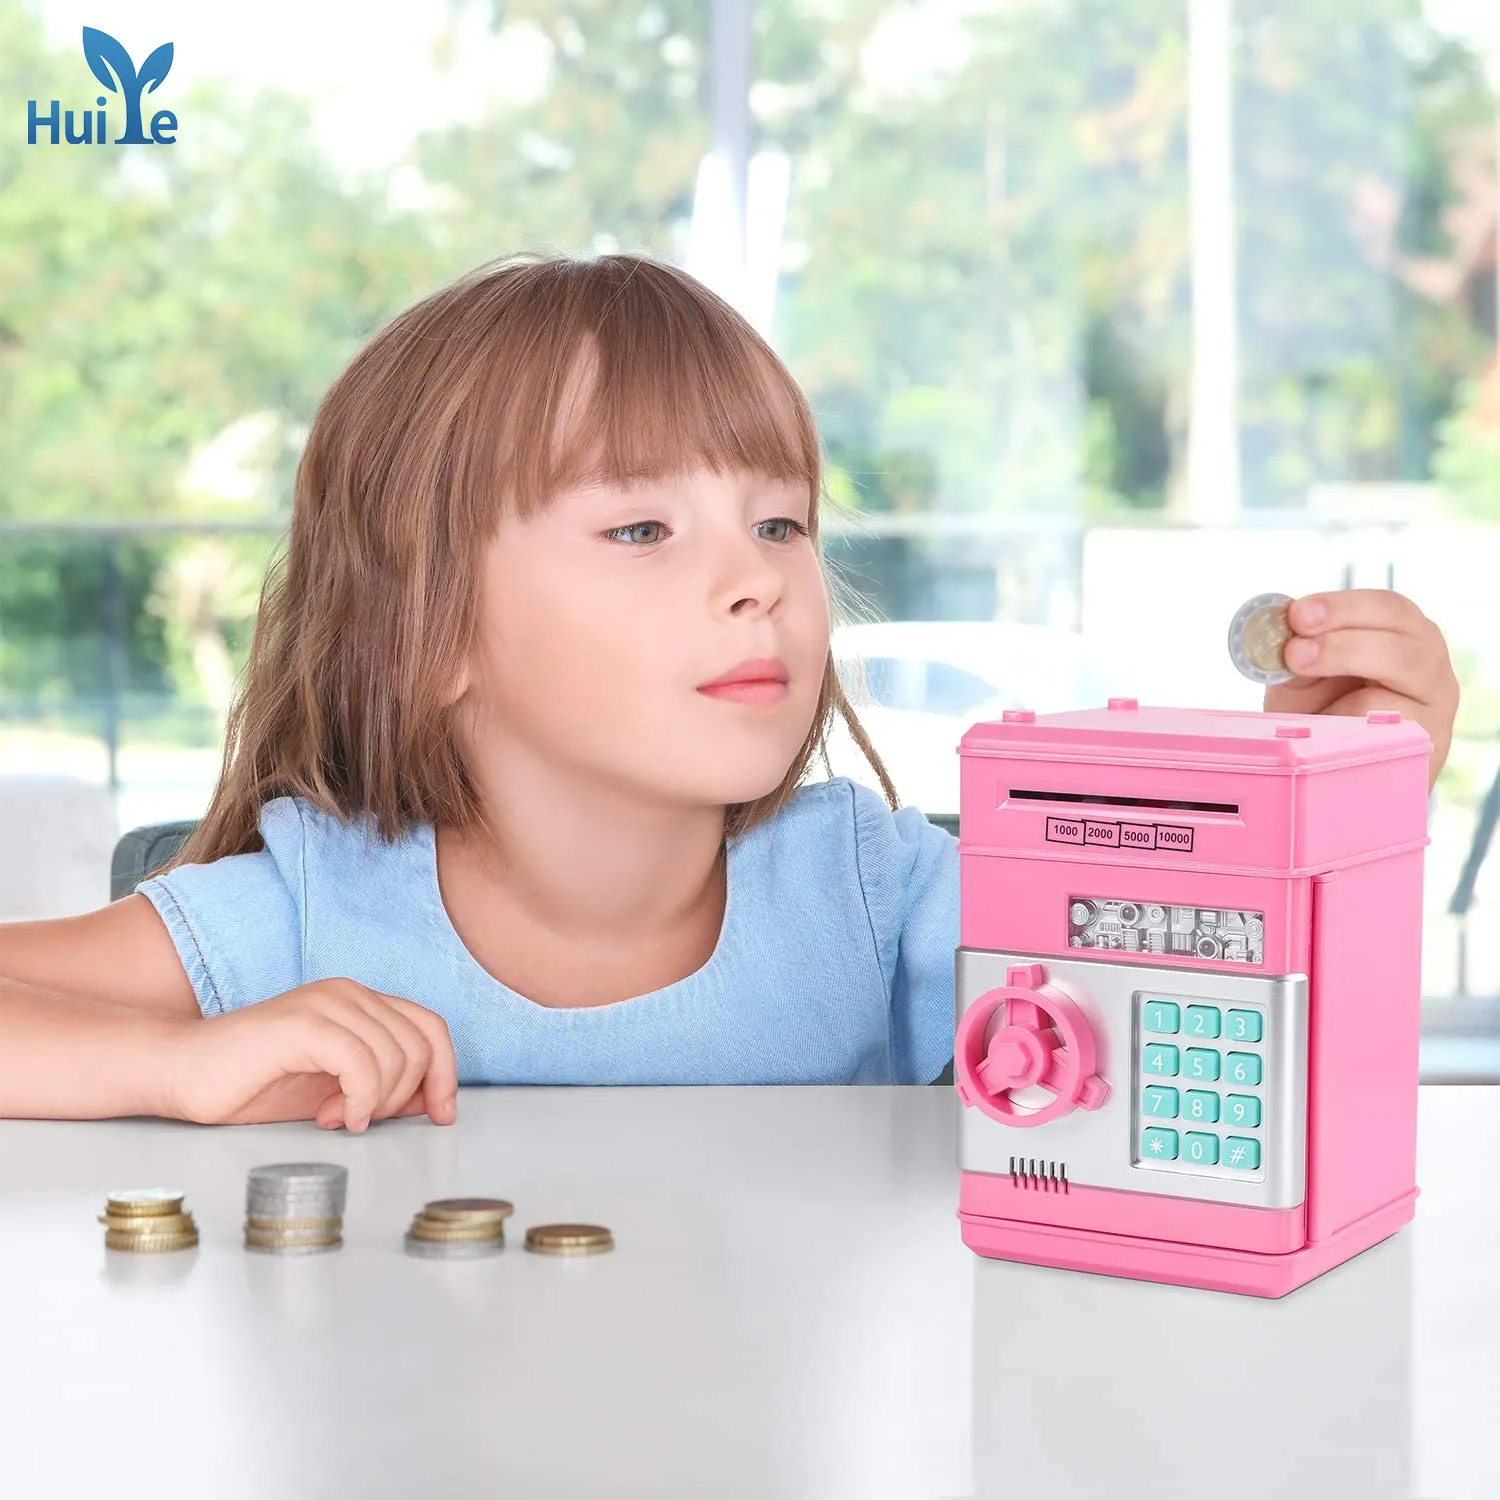 Huiye индивидуальная маленькая Копилка Банкомат с автоматическим вращением денег, паролем, безопасная копилка, детская электронная копилка, игрушка для детей